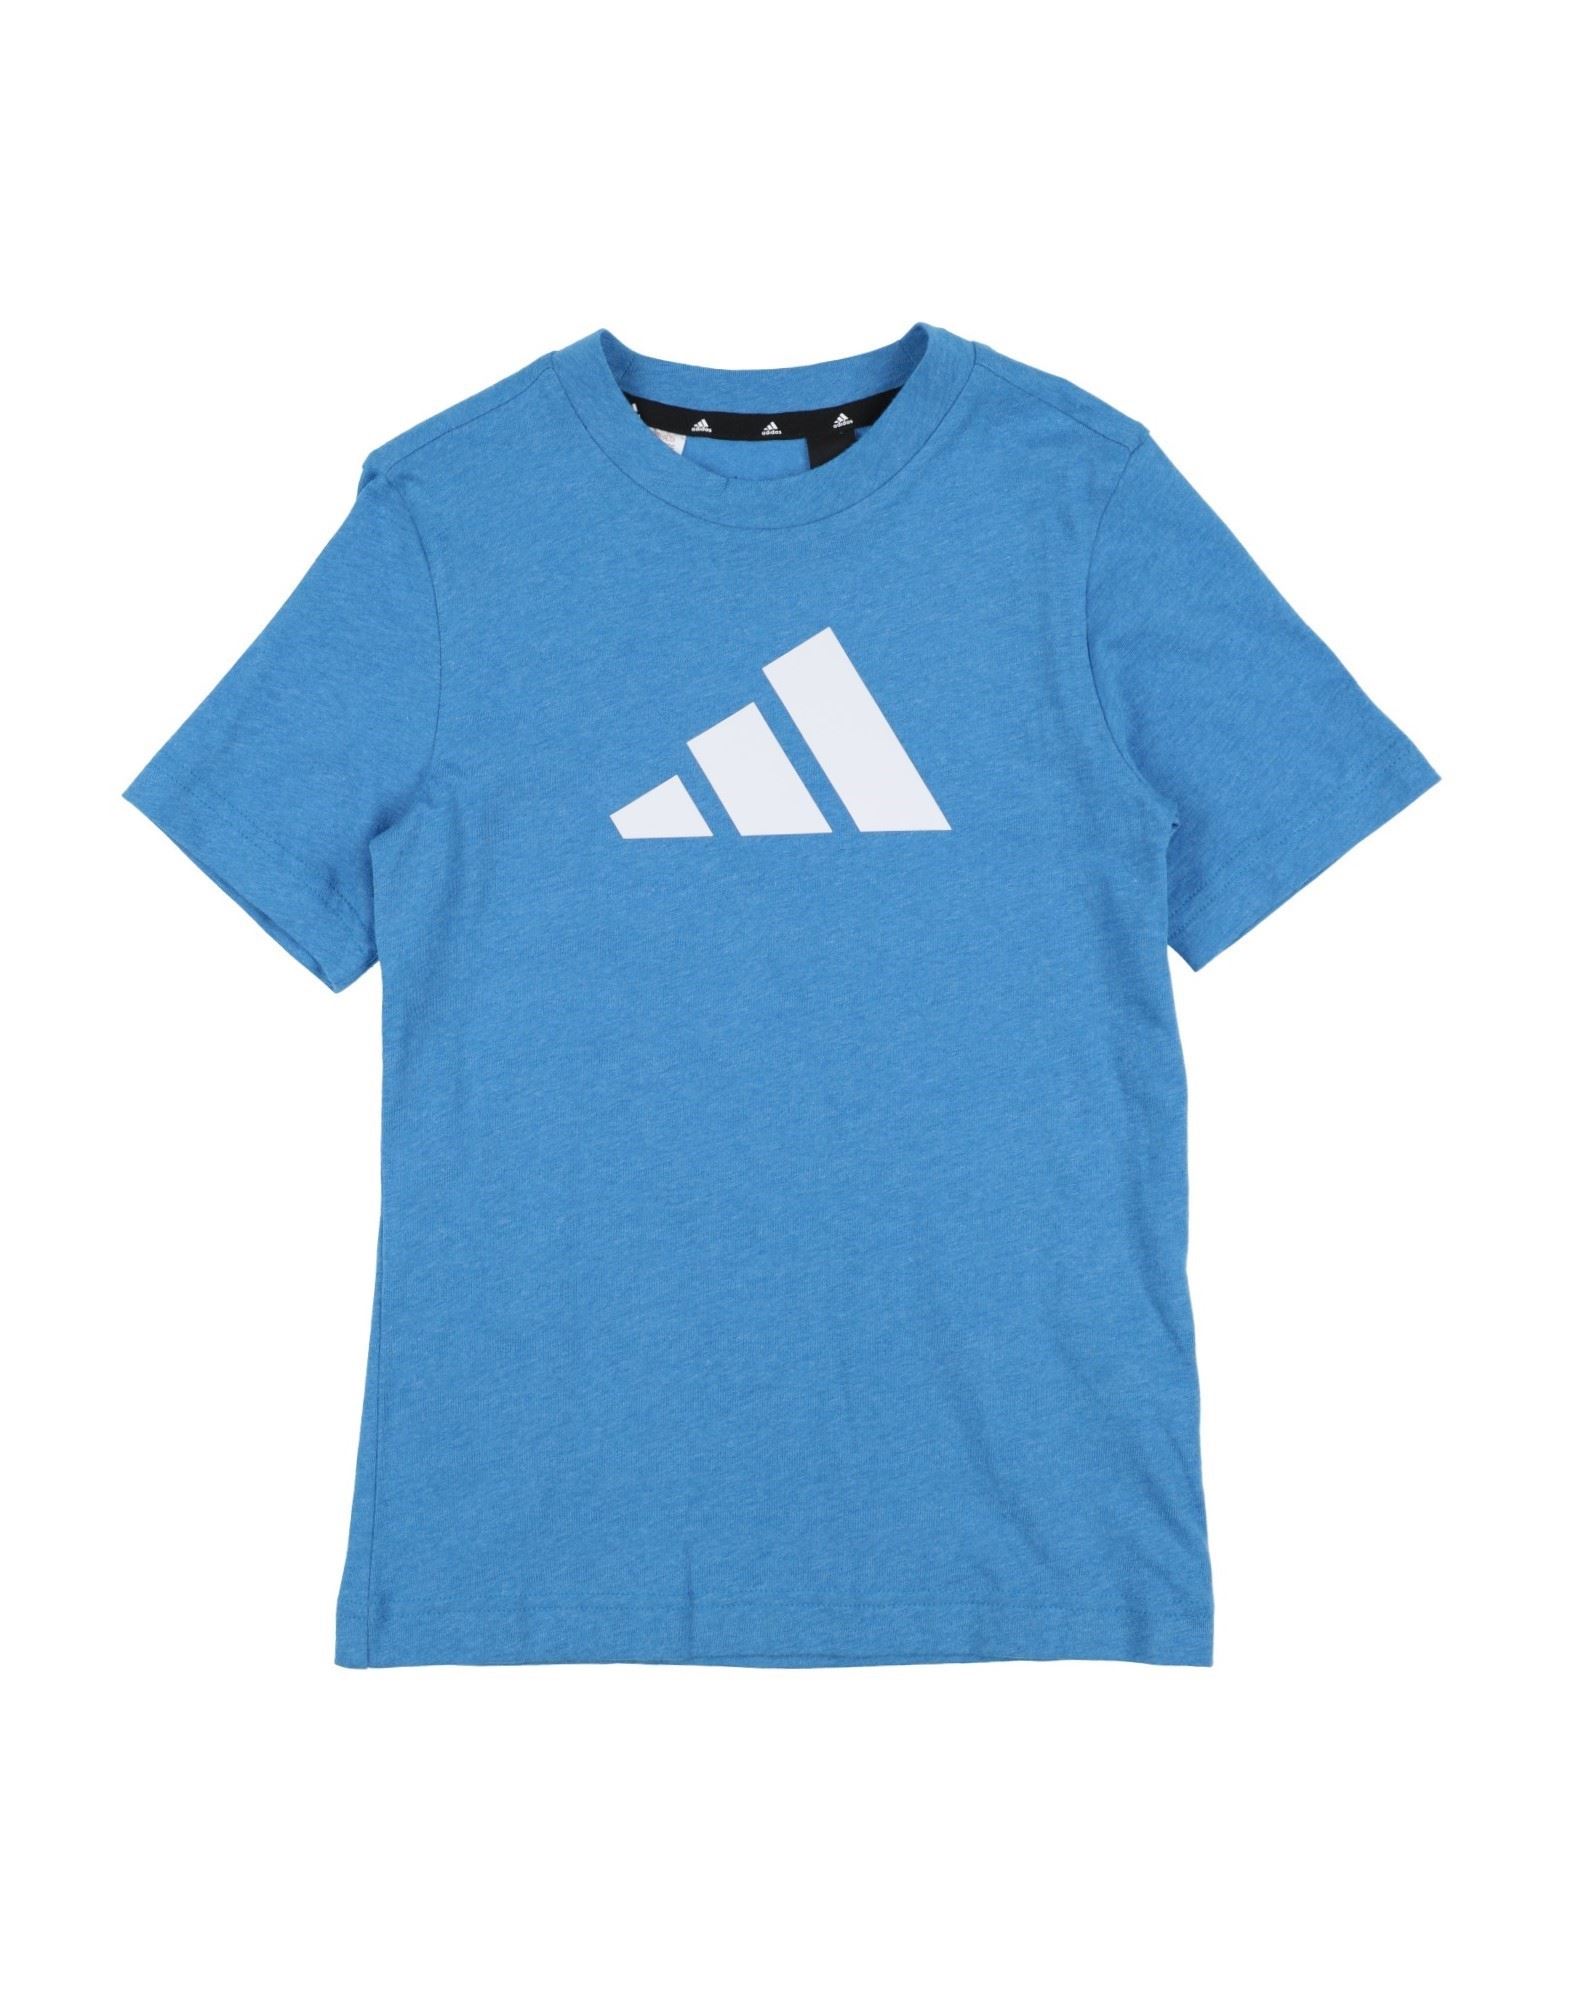 Adidas Originals Kids'  T-shirts In Blue